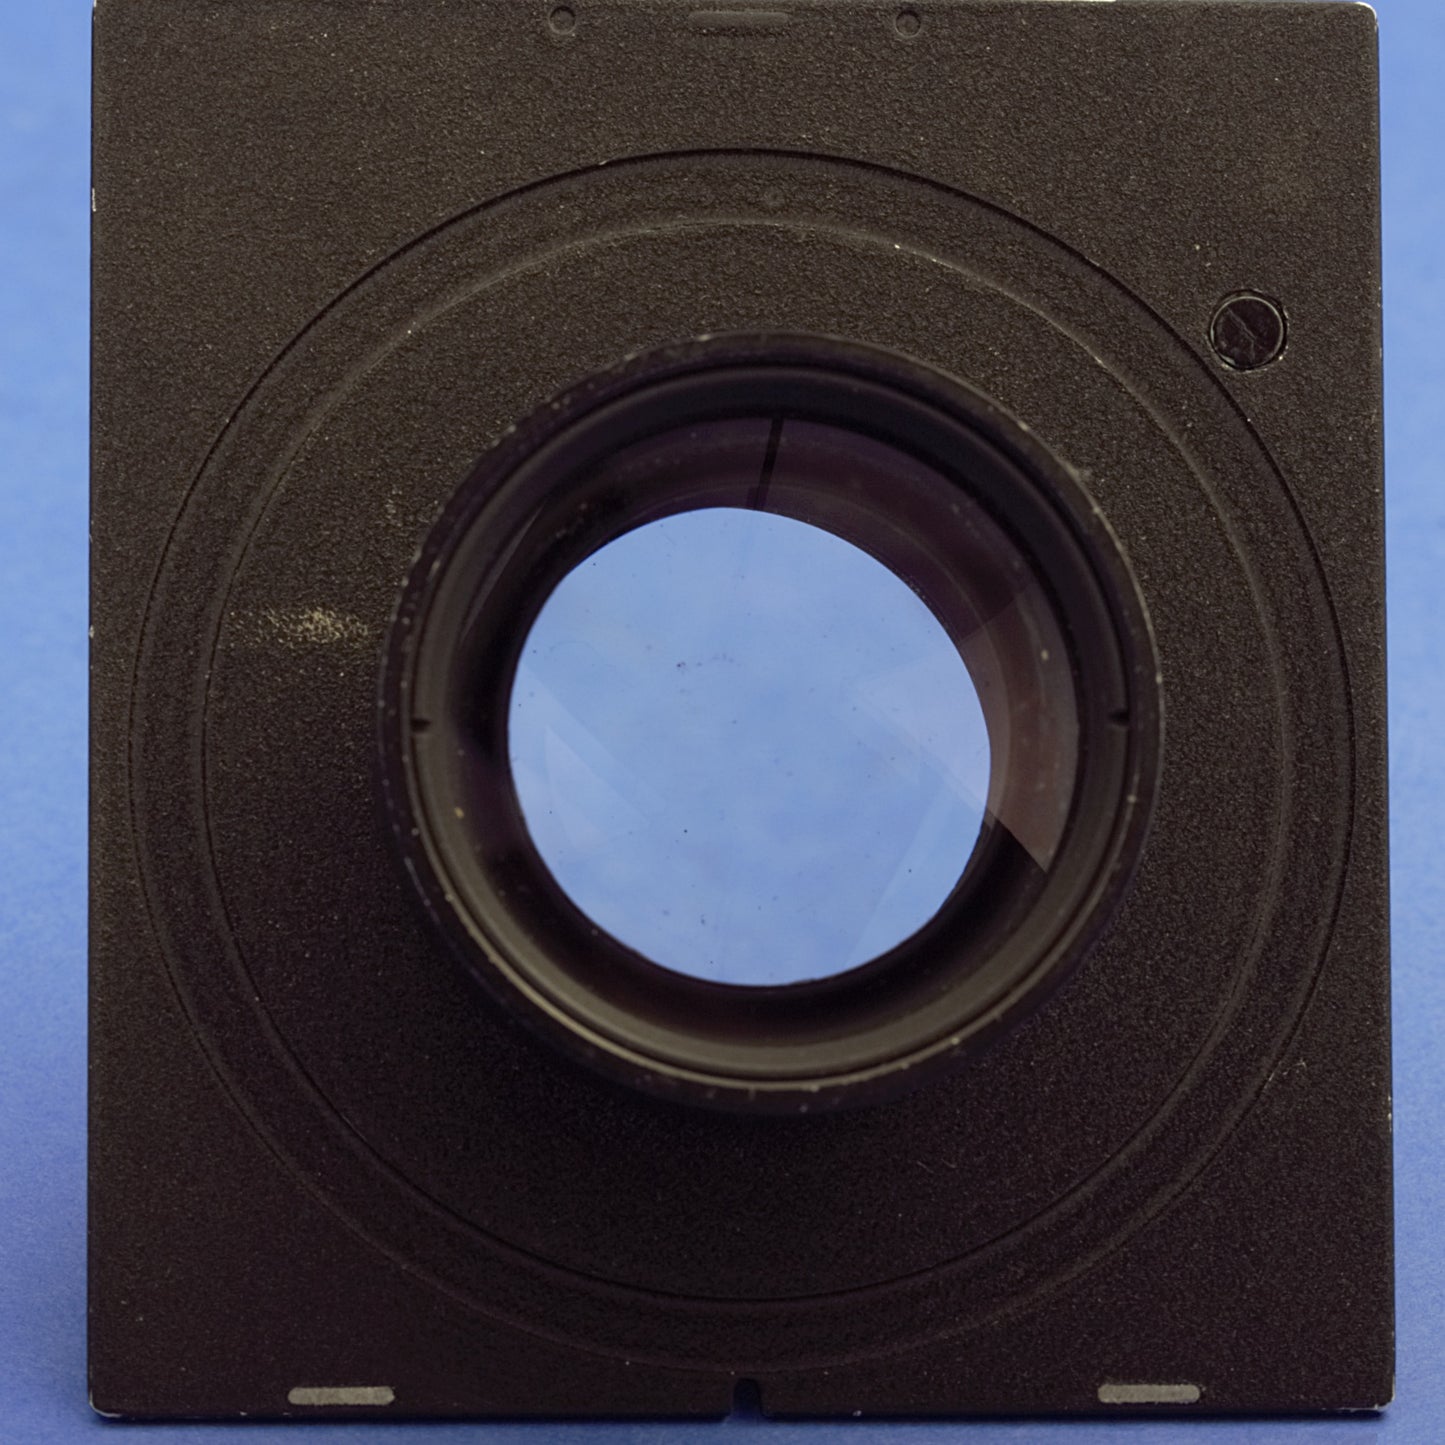 Rodenstock-Heligon 90mm 3.2 Large Format Lens on Synchro-Compur Shutter